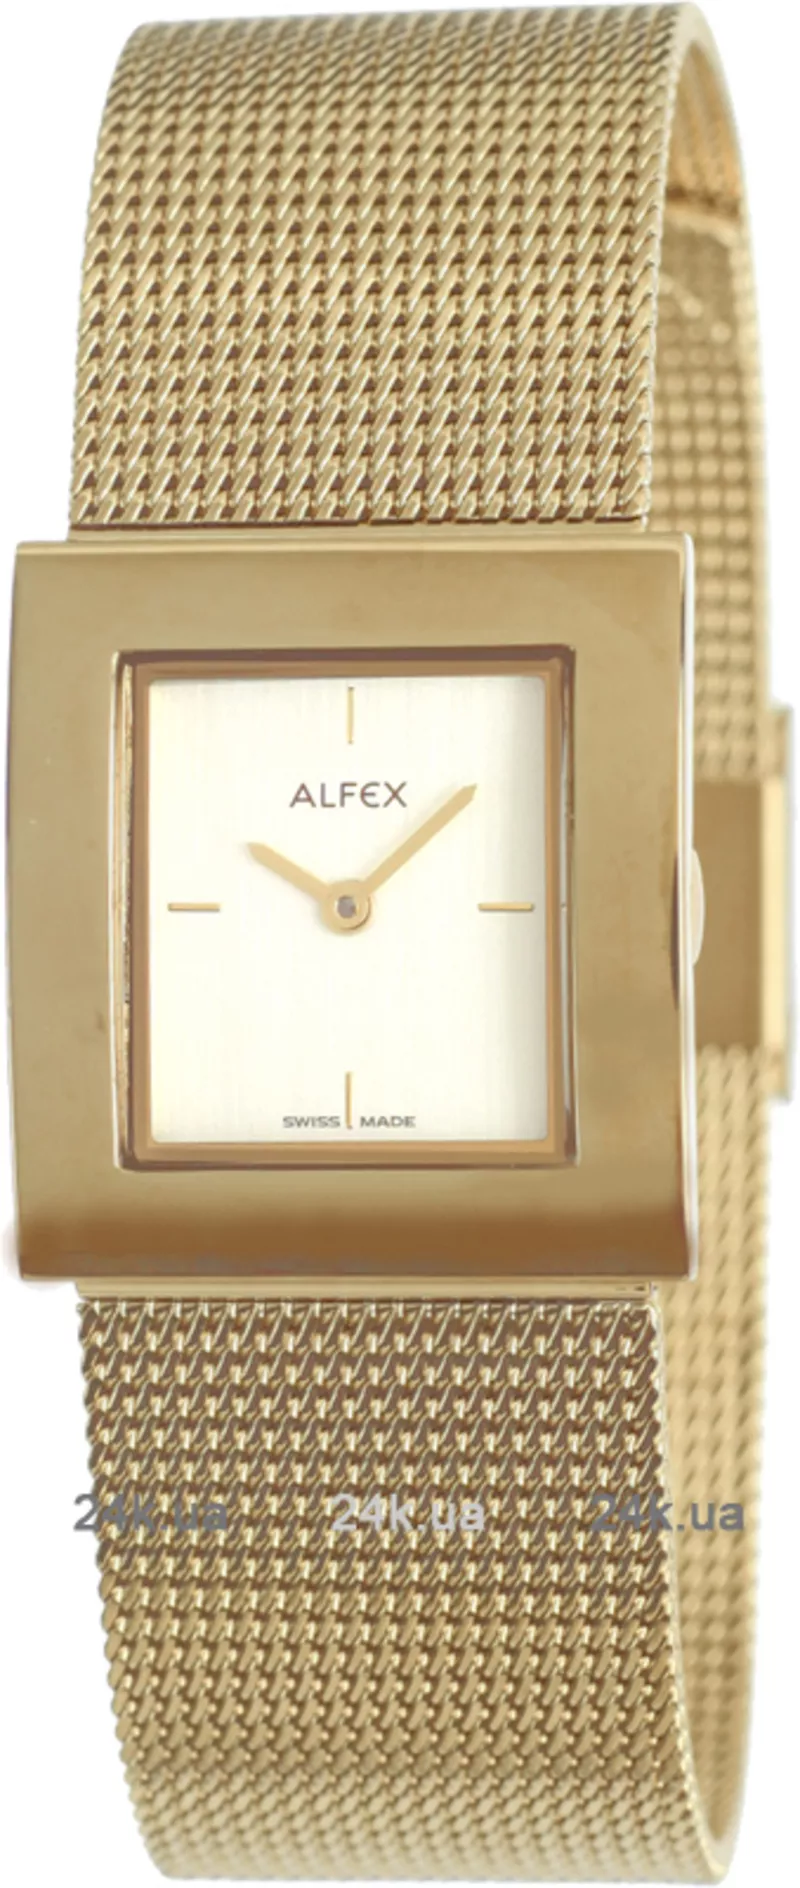 Часы Alfex 5217/196